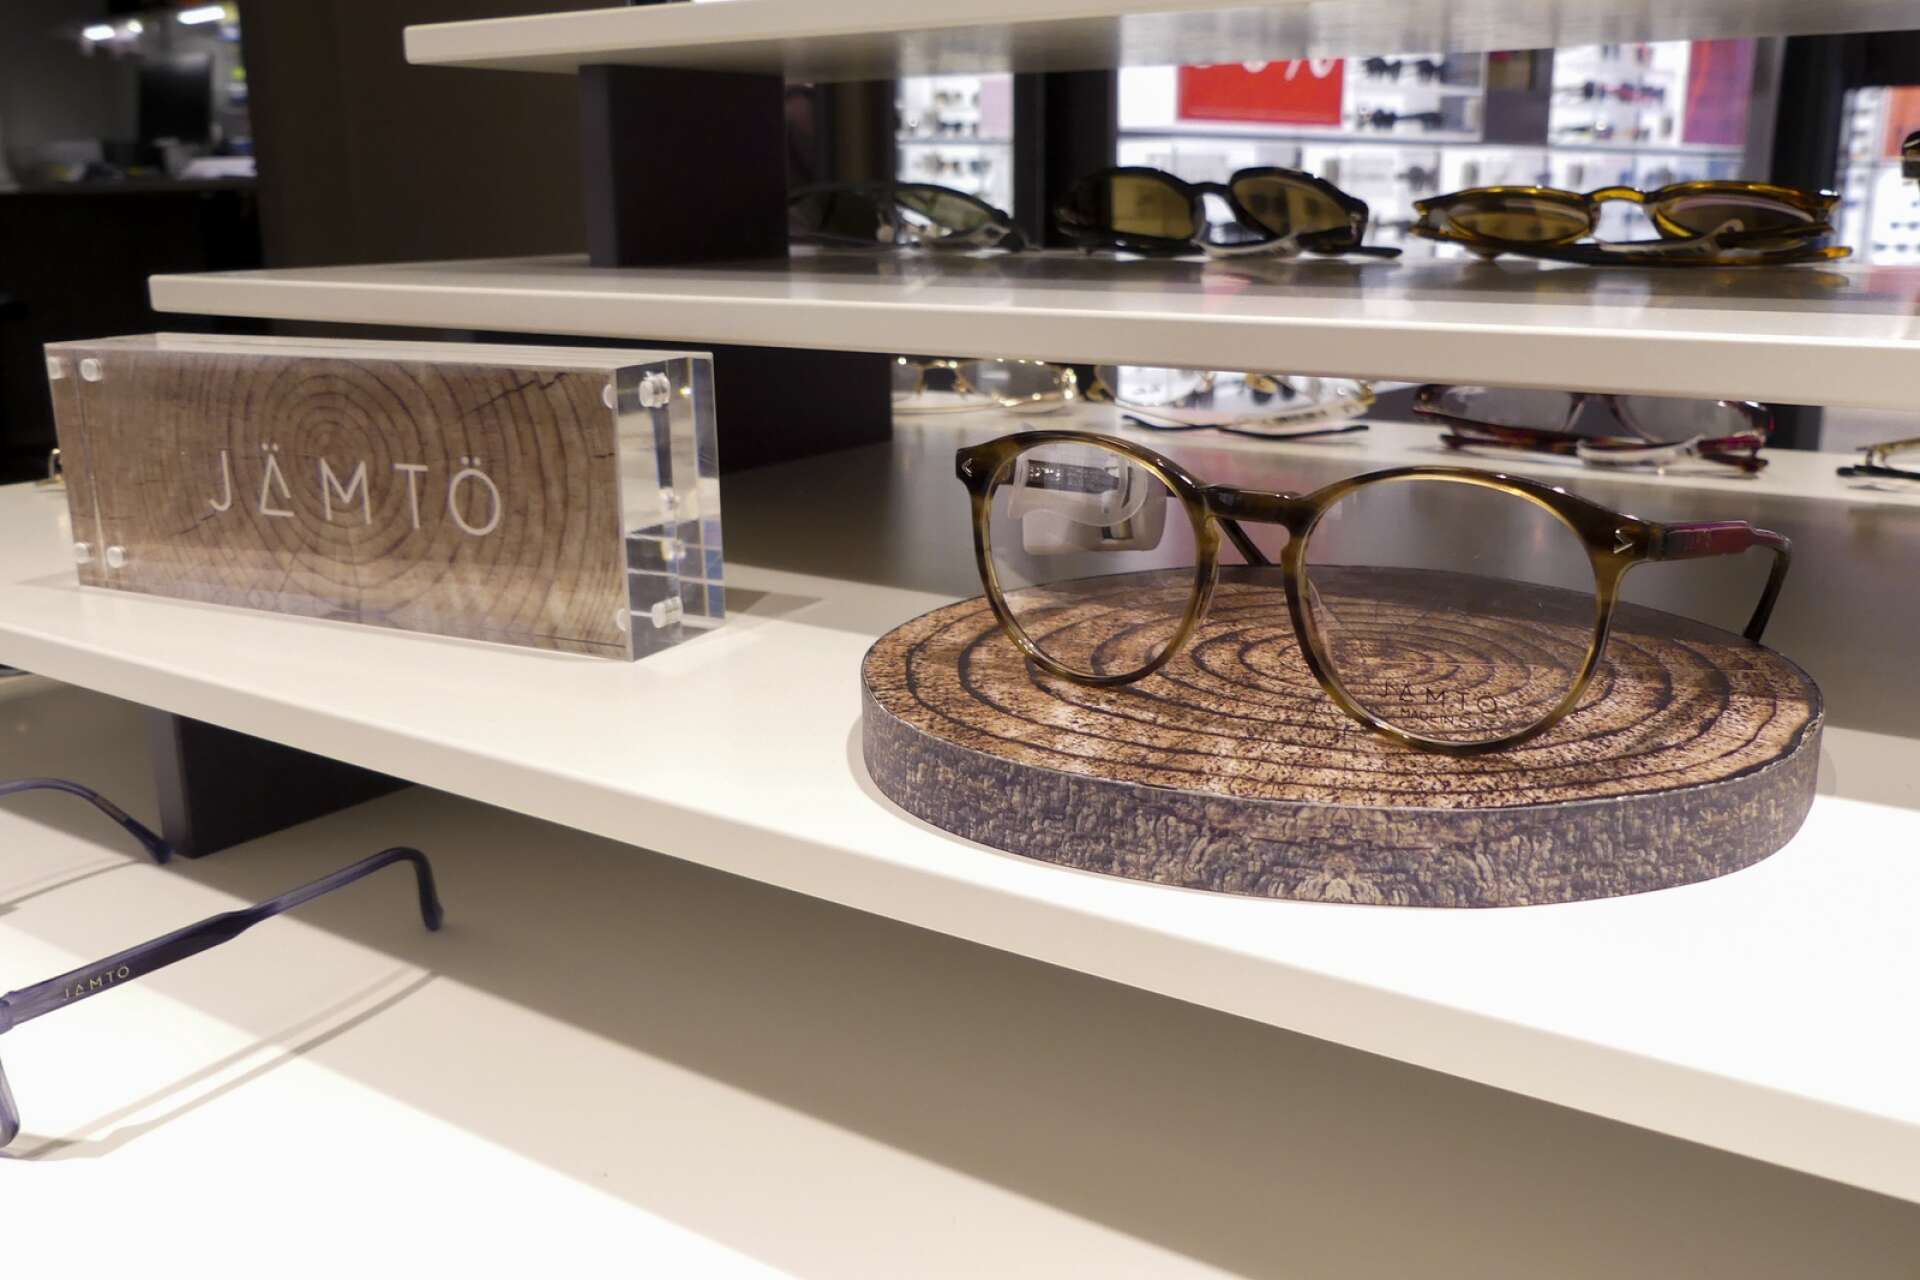 Det nya varumärket Jämtö frontar i butiken; glasögonbågar tillverkade av Synsam i deras nya produktion på Frösön i Jämtland.